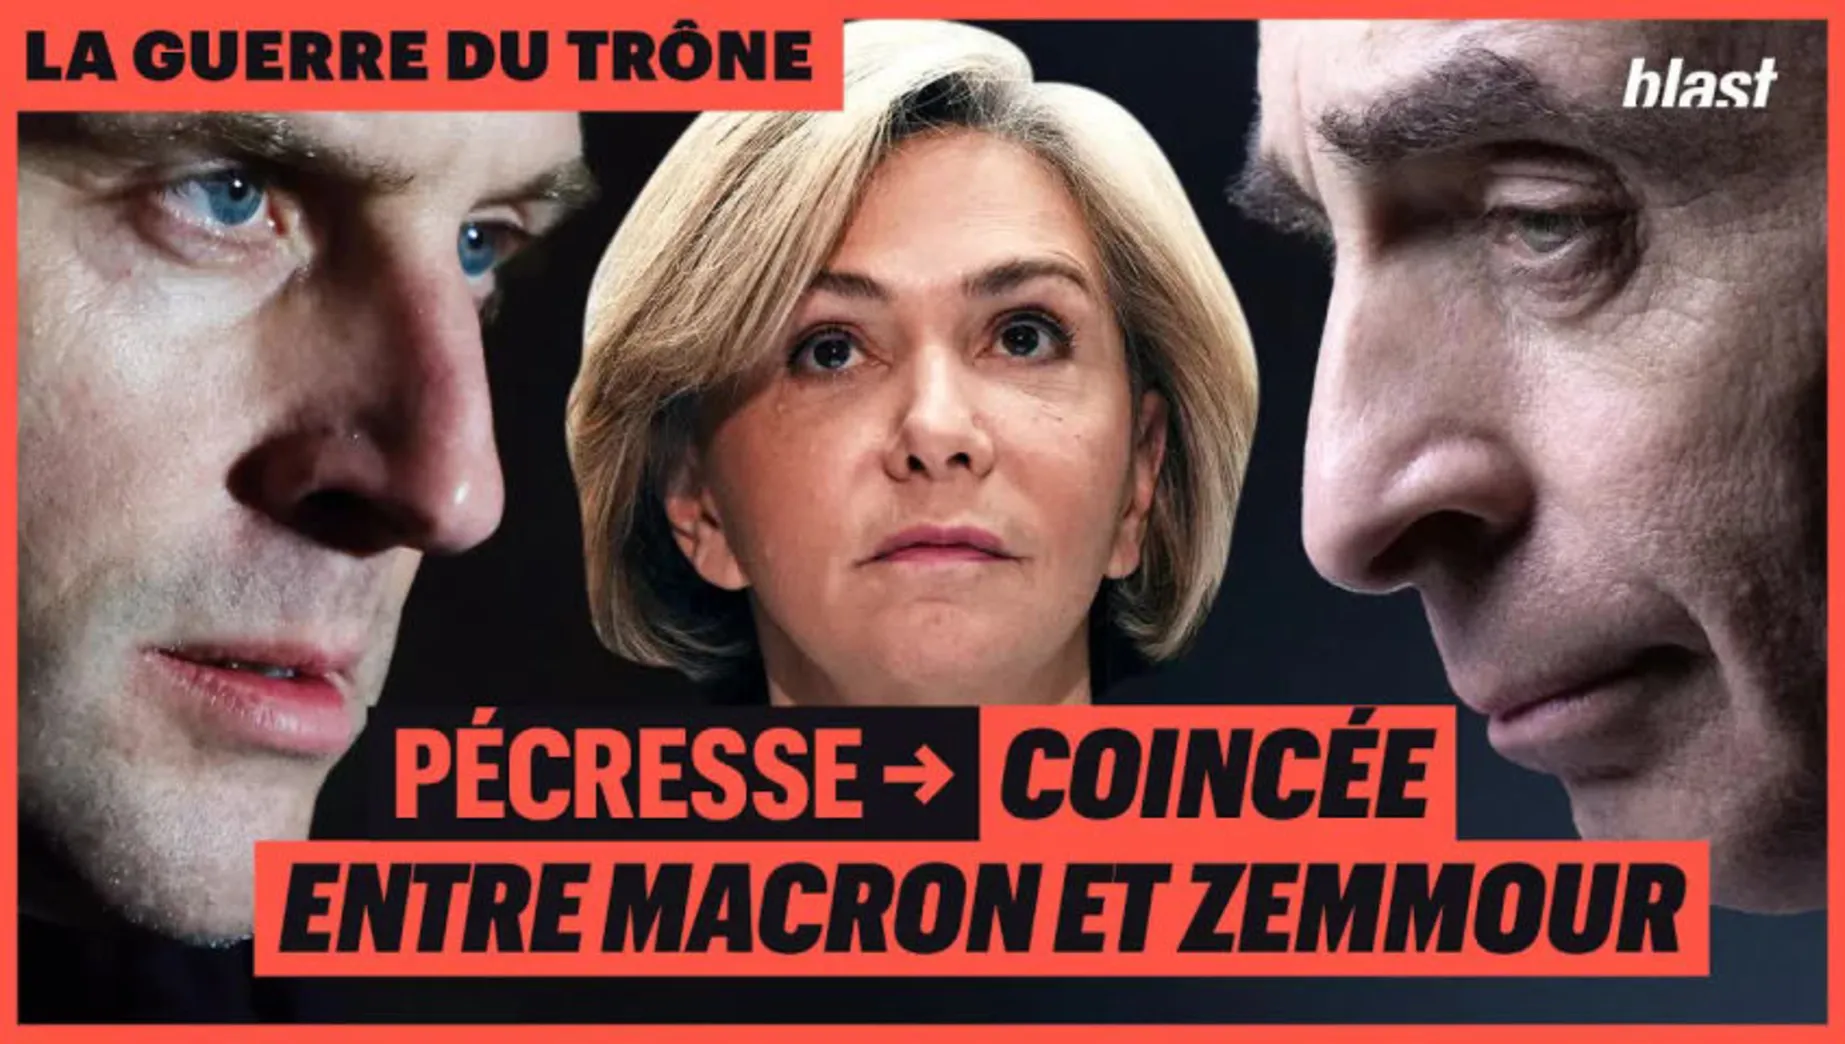 Pécresse coincée entre Macron et Zemmour